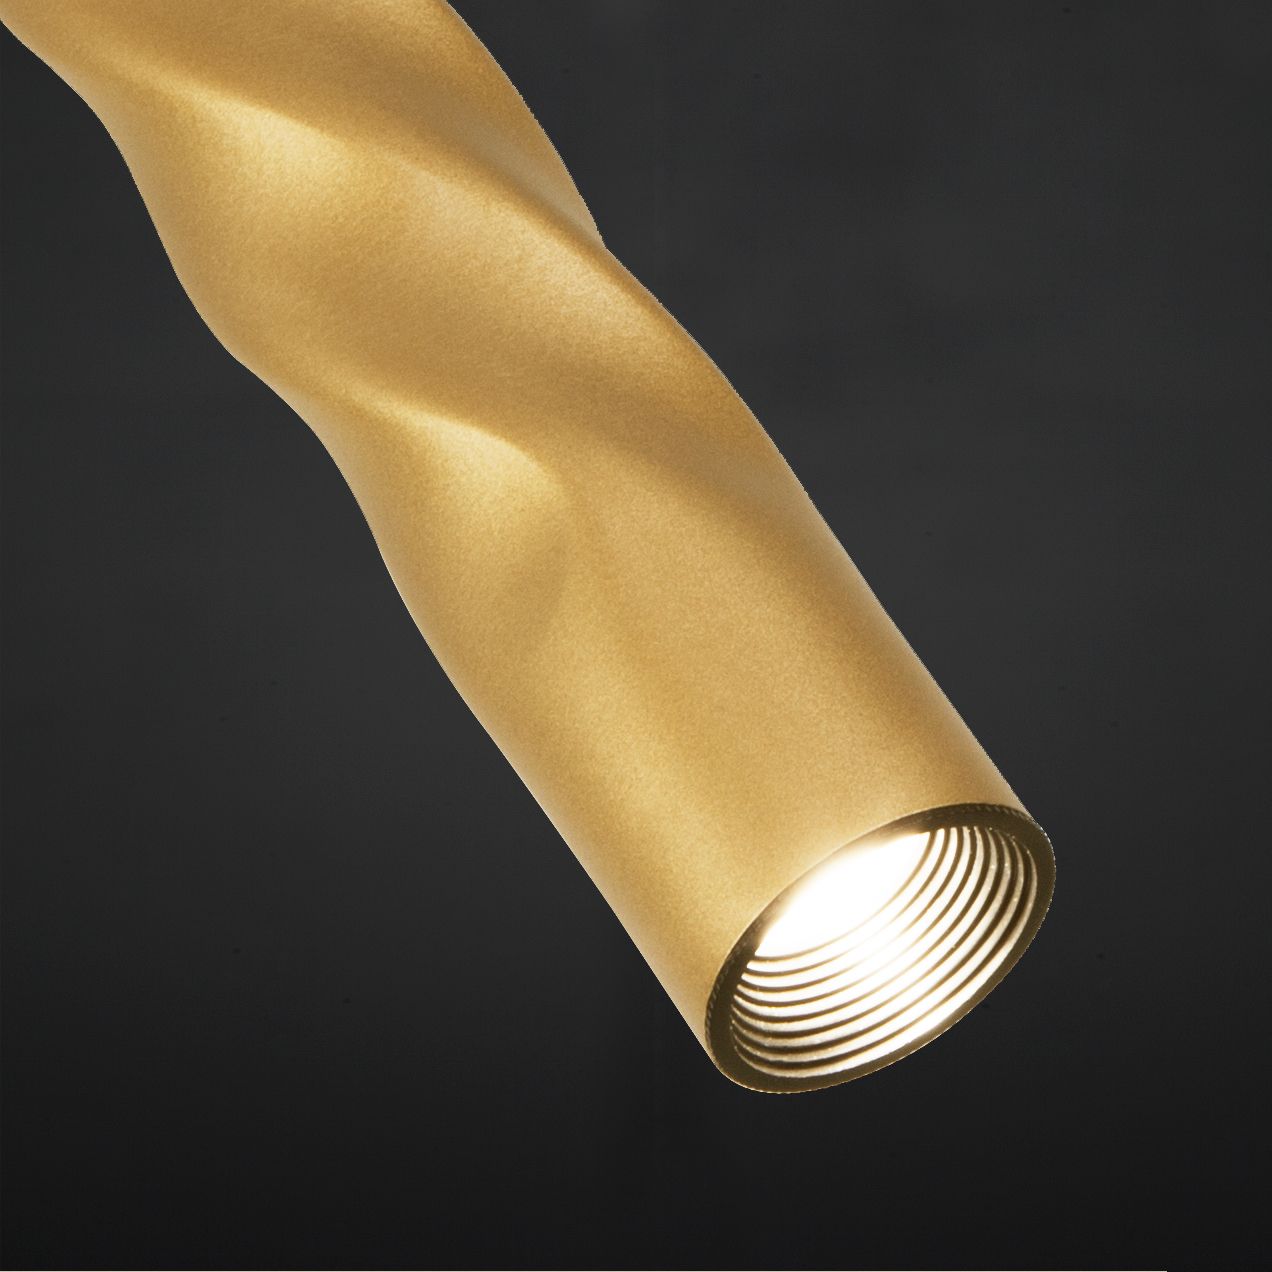 Подвесной светодиодный светильник 50136/1 LED золото